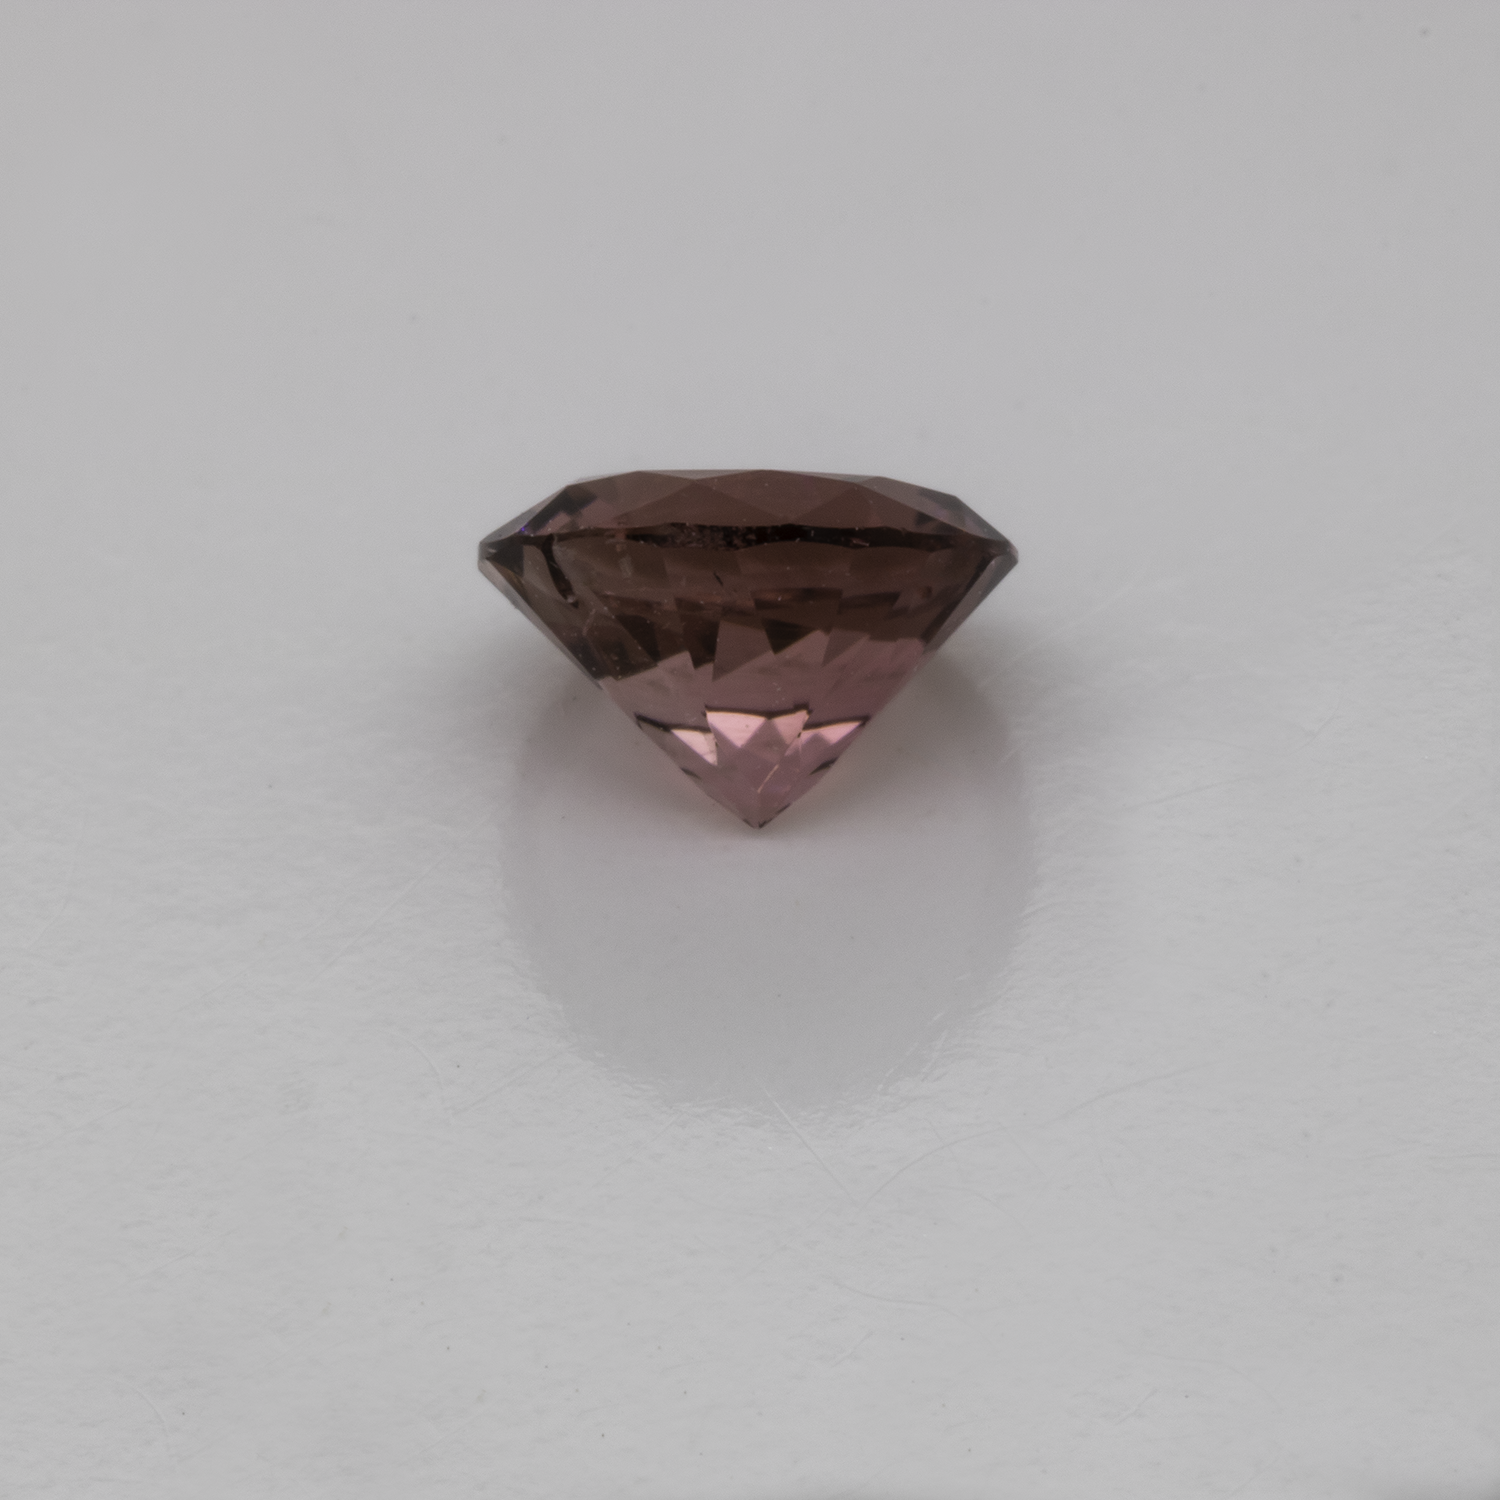 Tourmaline - pink, round, 5.5x5.5 mm, 0.59-0.63 cts, No. TR10162